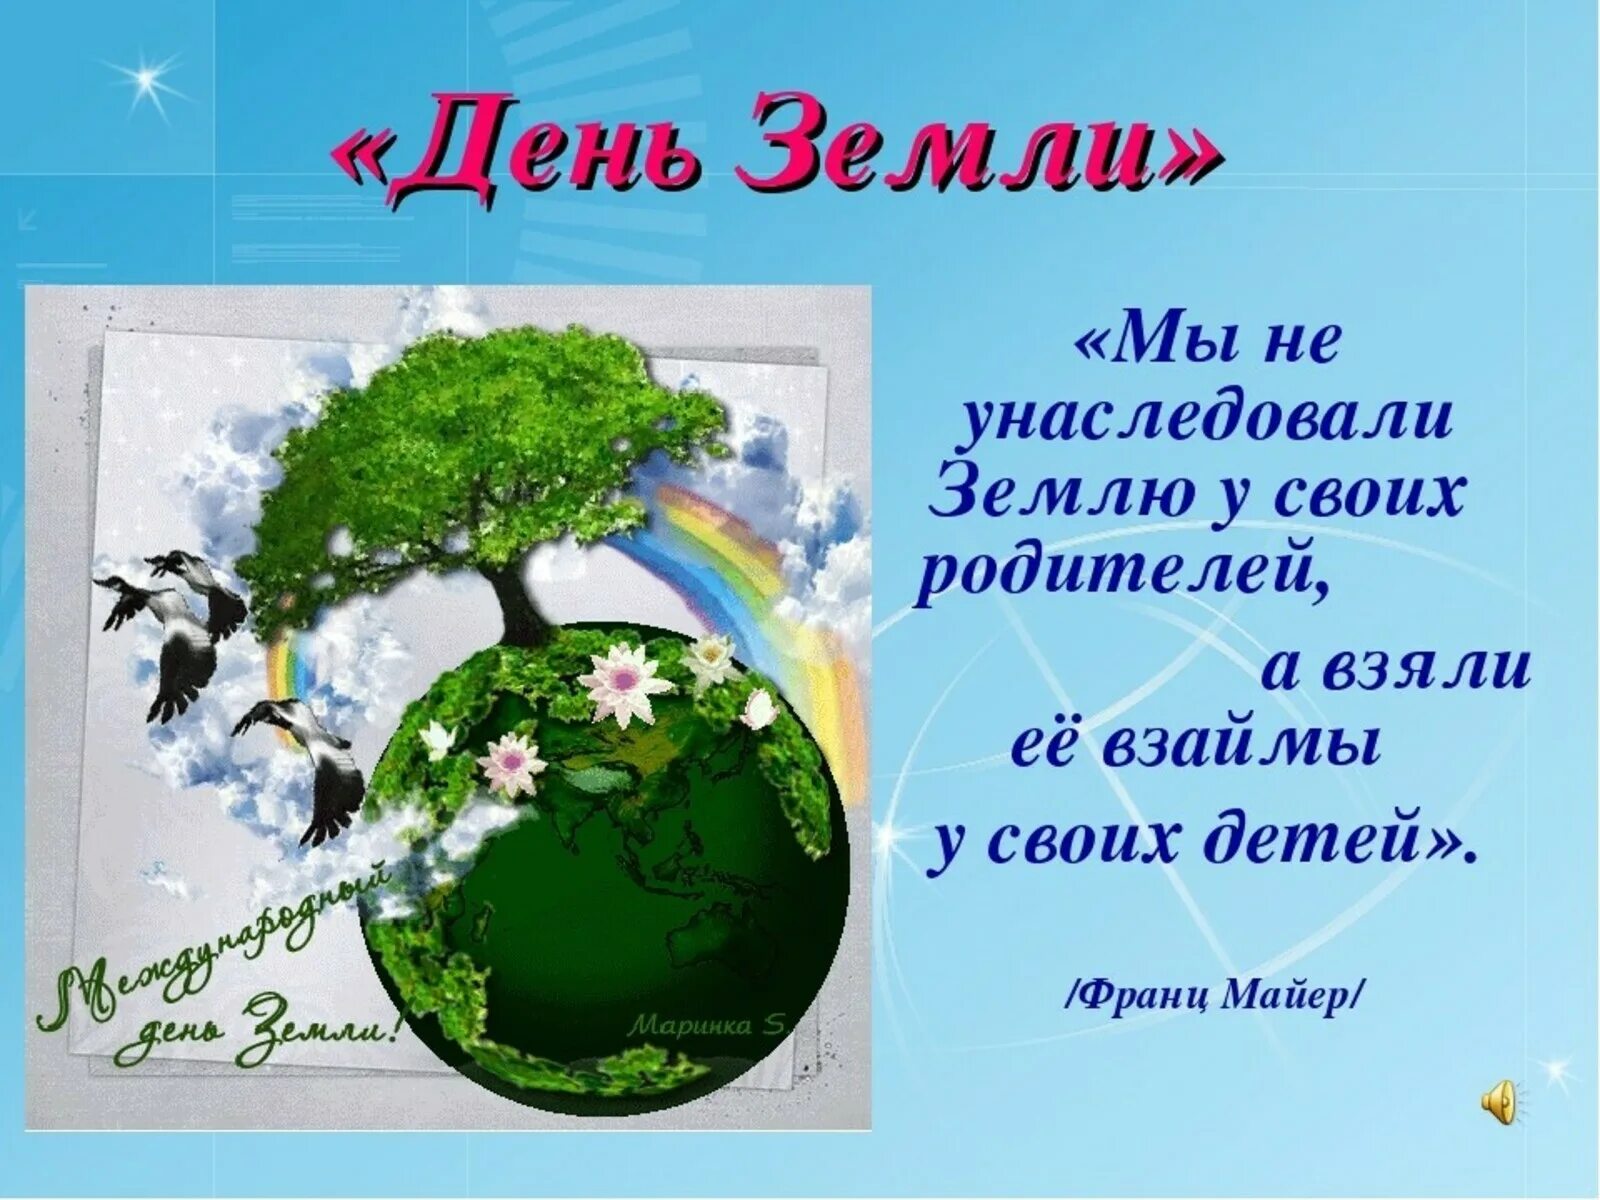 Международный праздник земли. День земли. Всемирный день земли. С днем земли поздравления. День земли открытка.